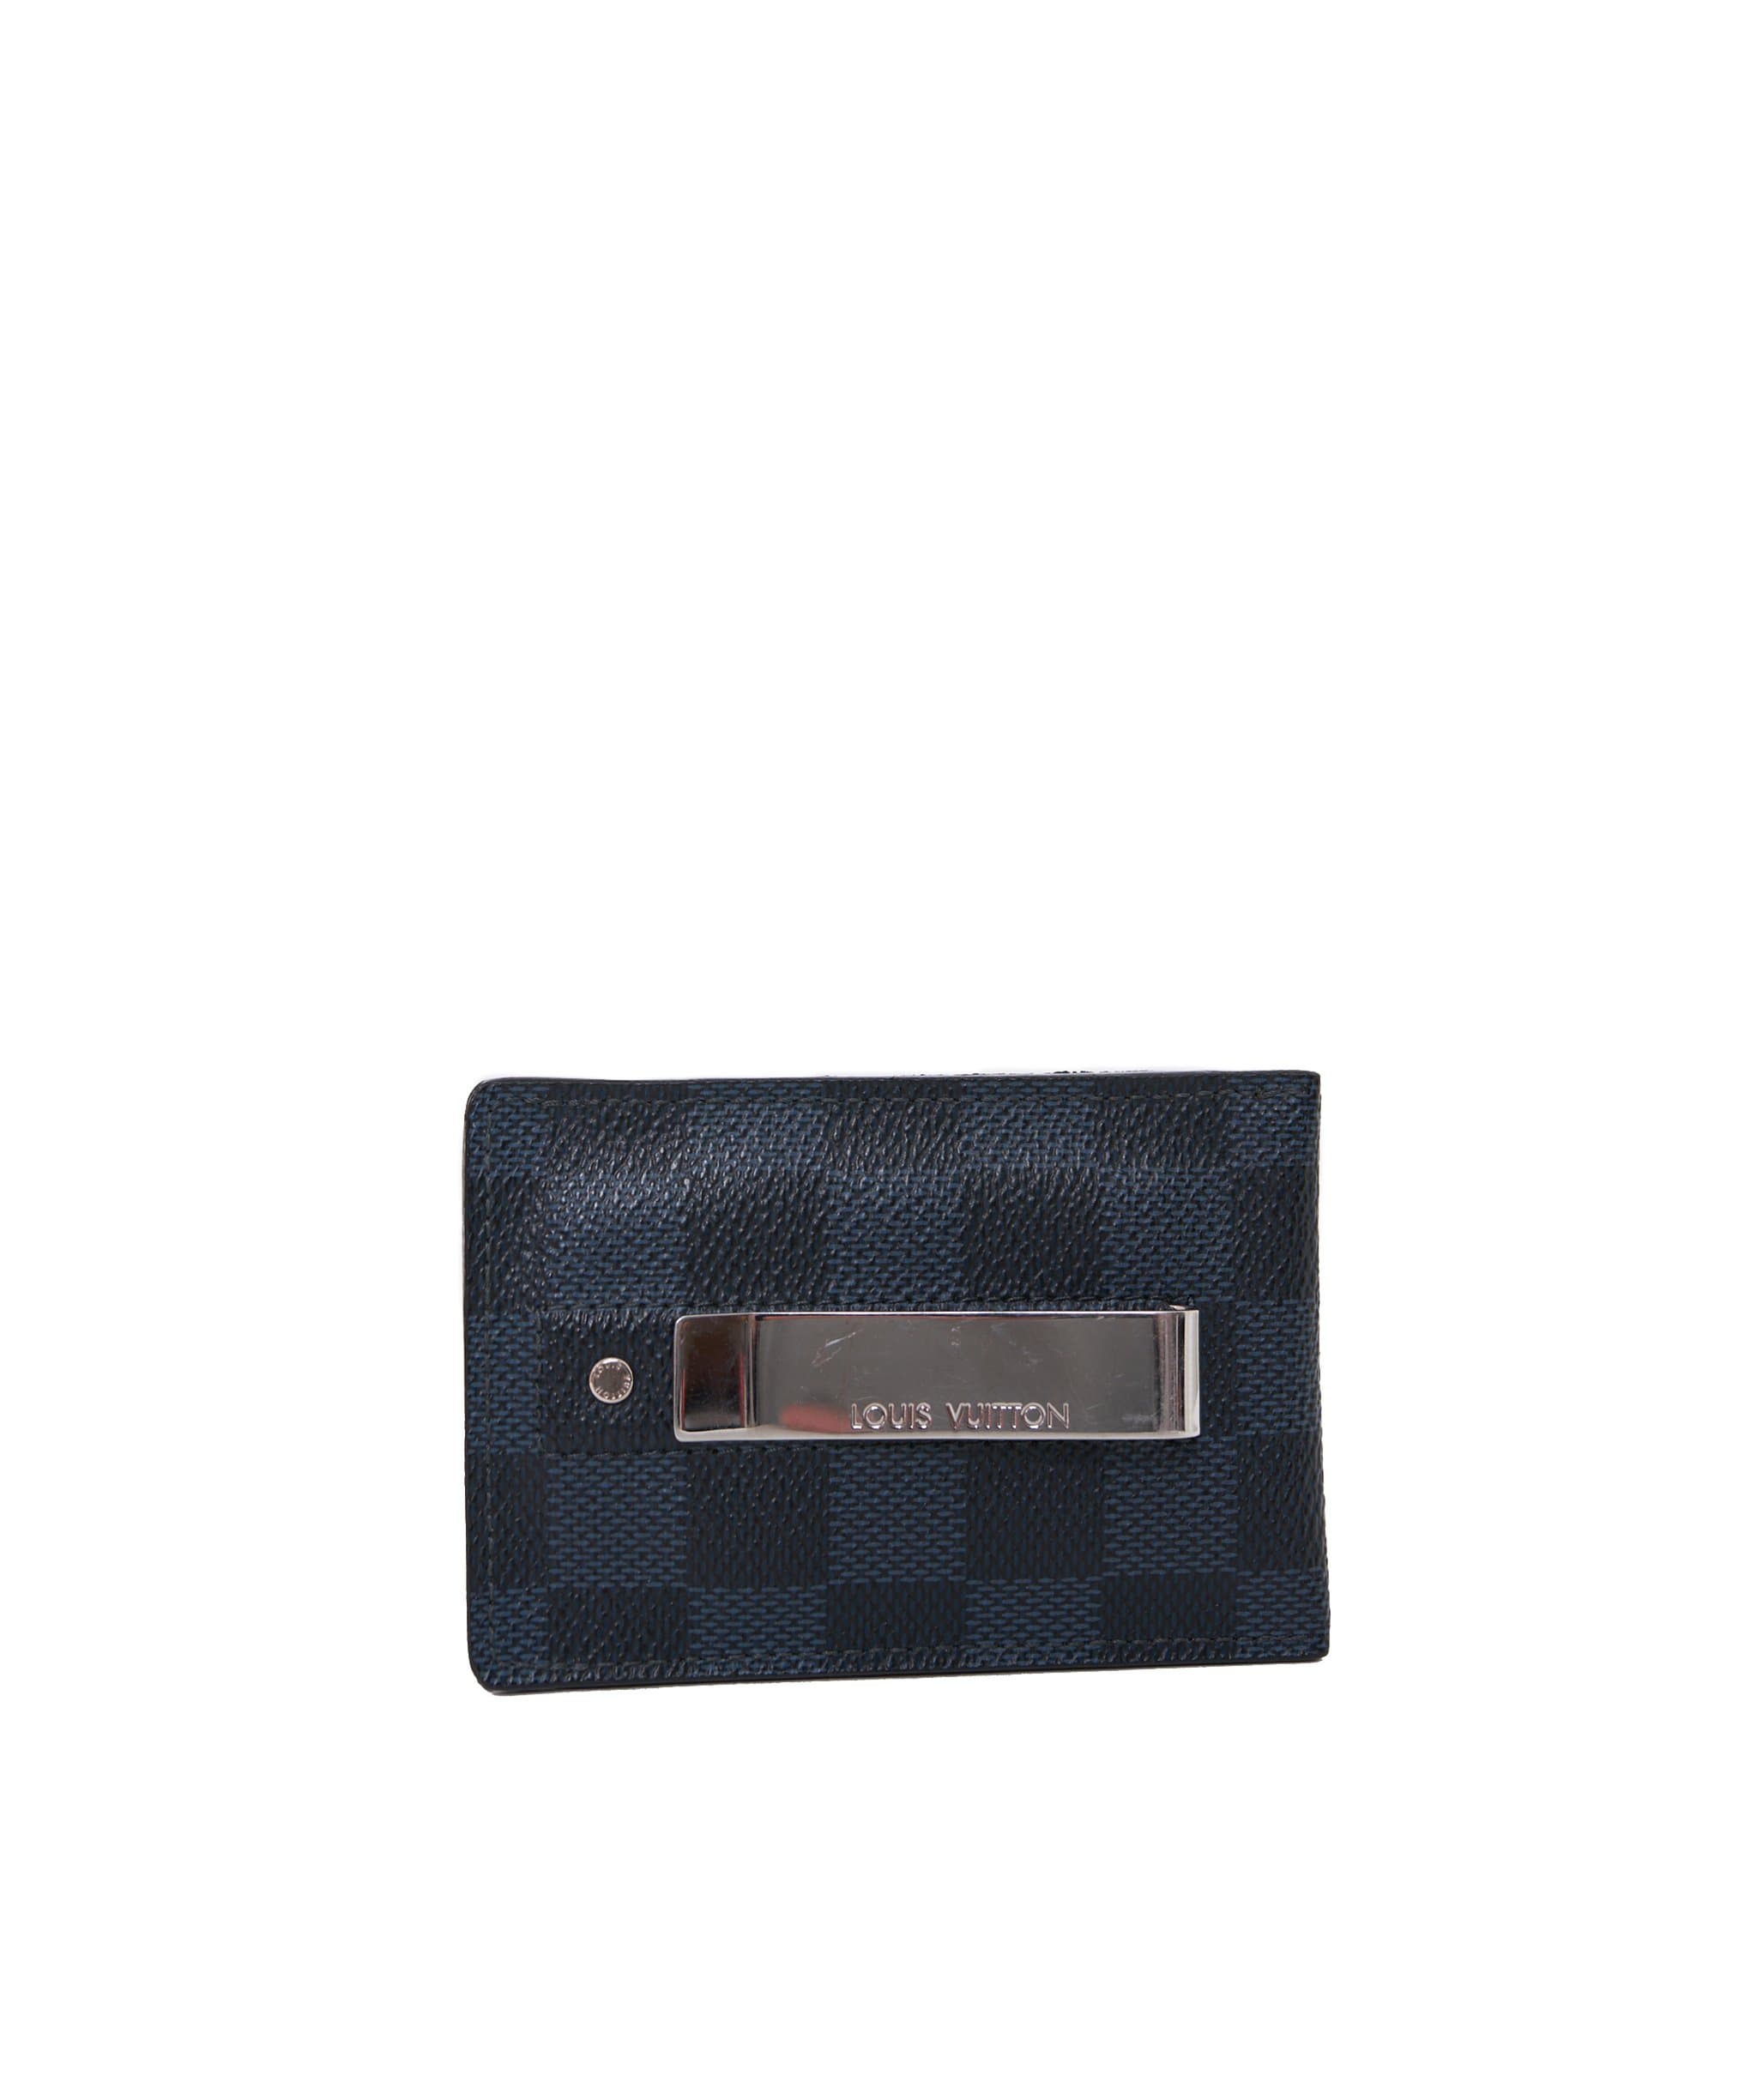 Louis Vuitton Louis vuitton black damier card holder with clip  - ADL1087